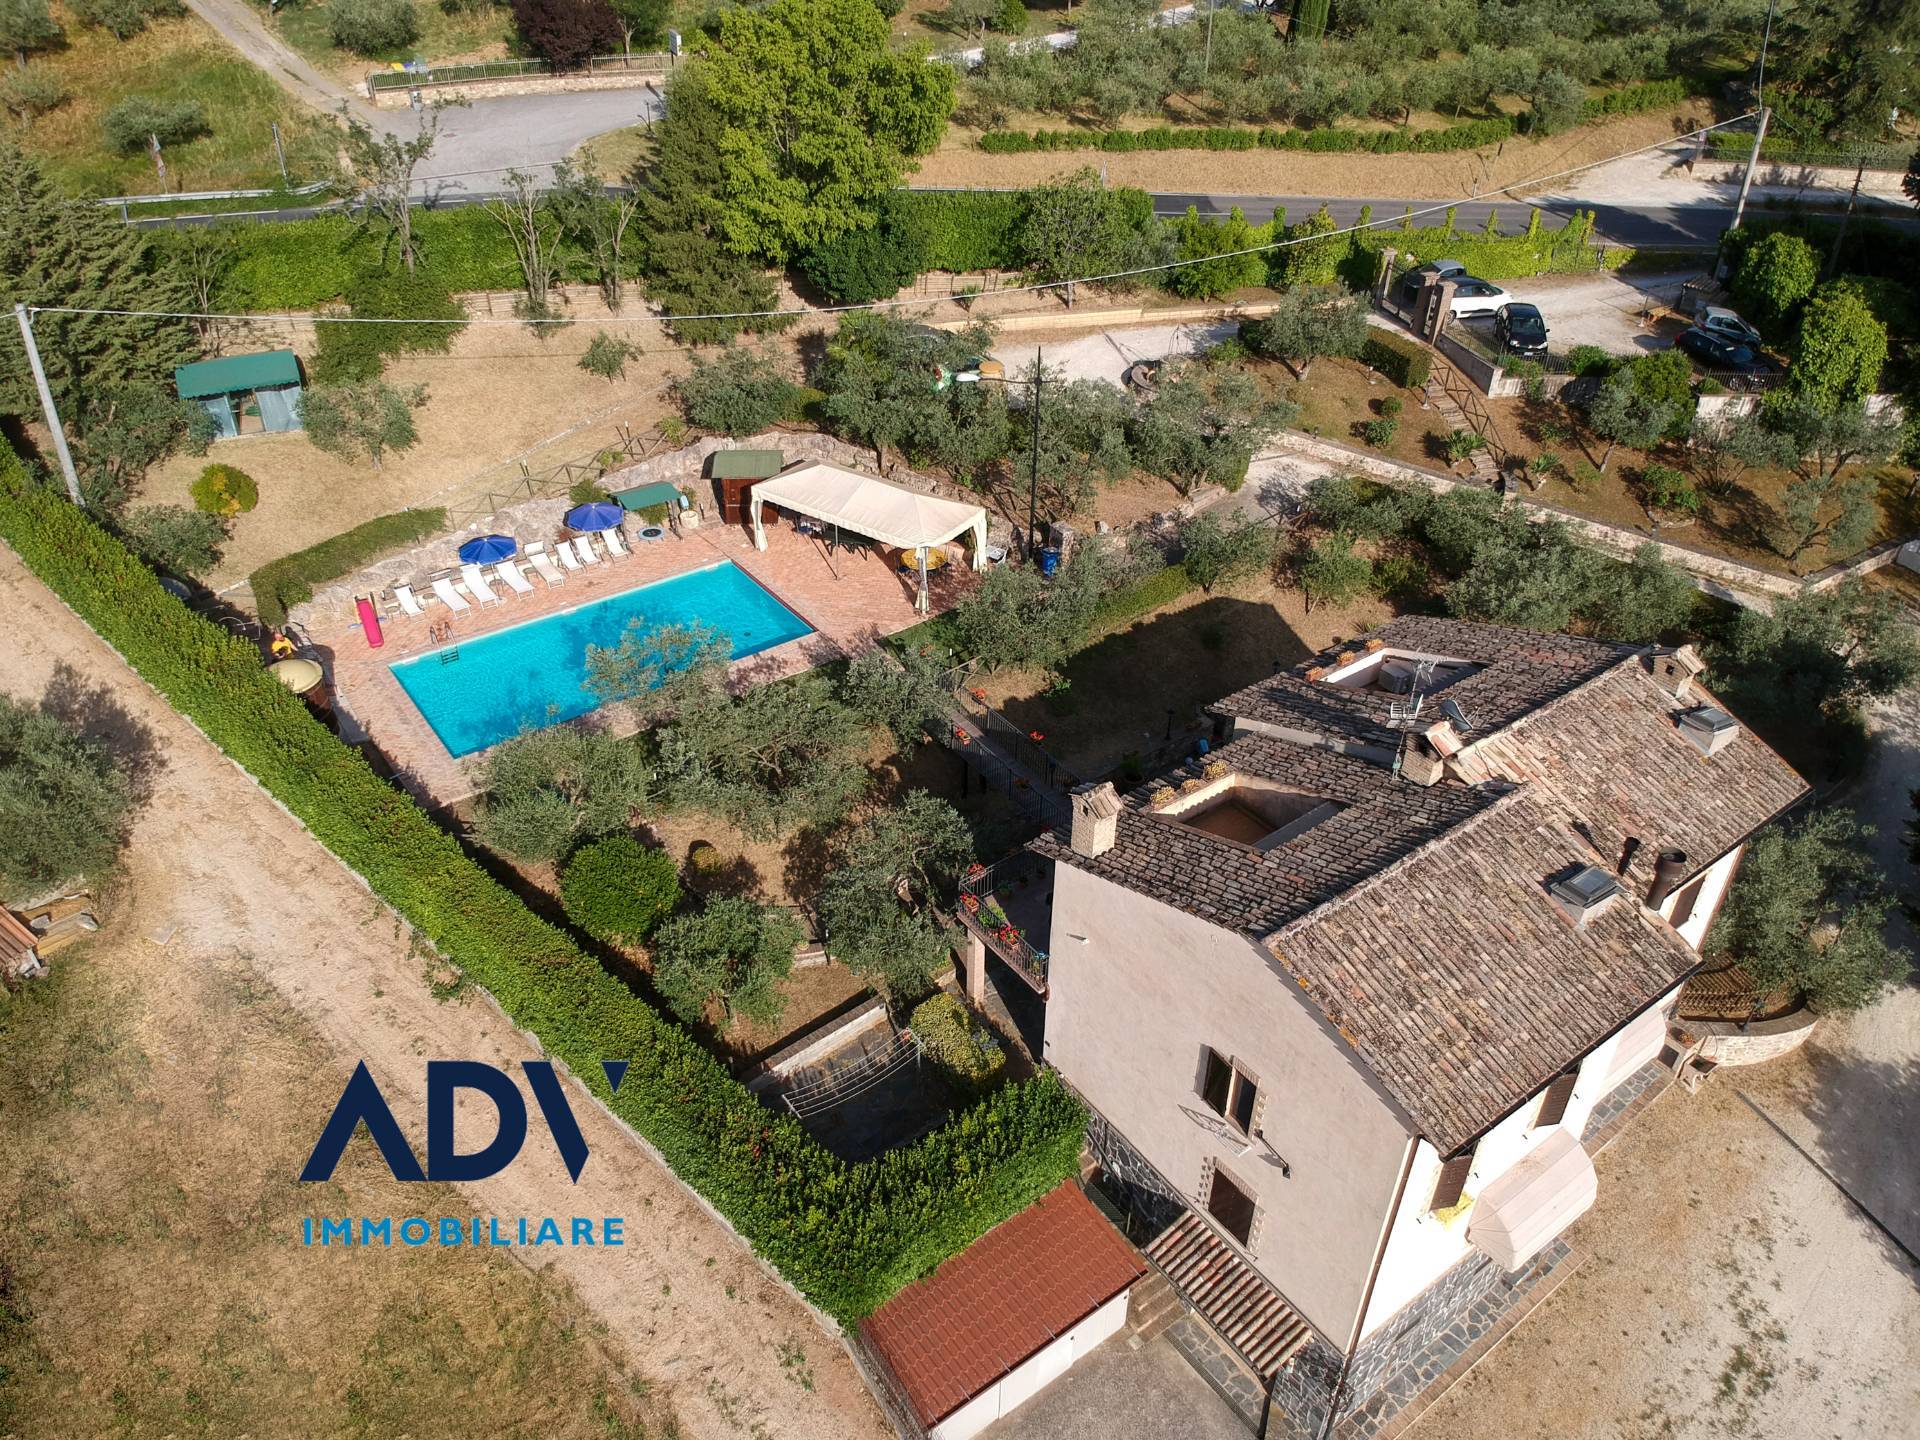 Villa in vendita a Assisi, 8 locali, prezzo € 550.000 | PortaleAgenzieImmobiliari.it